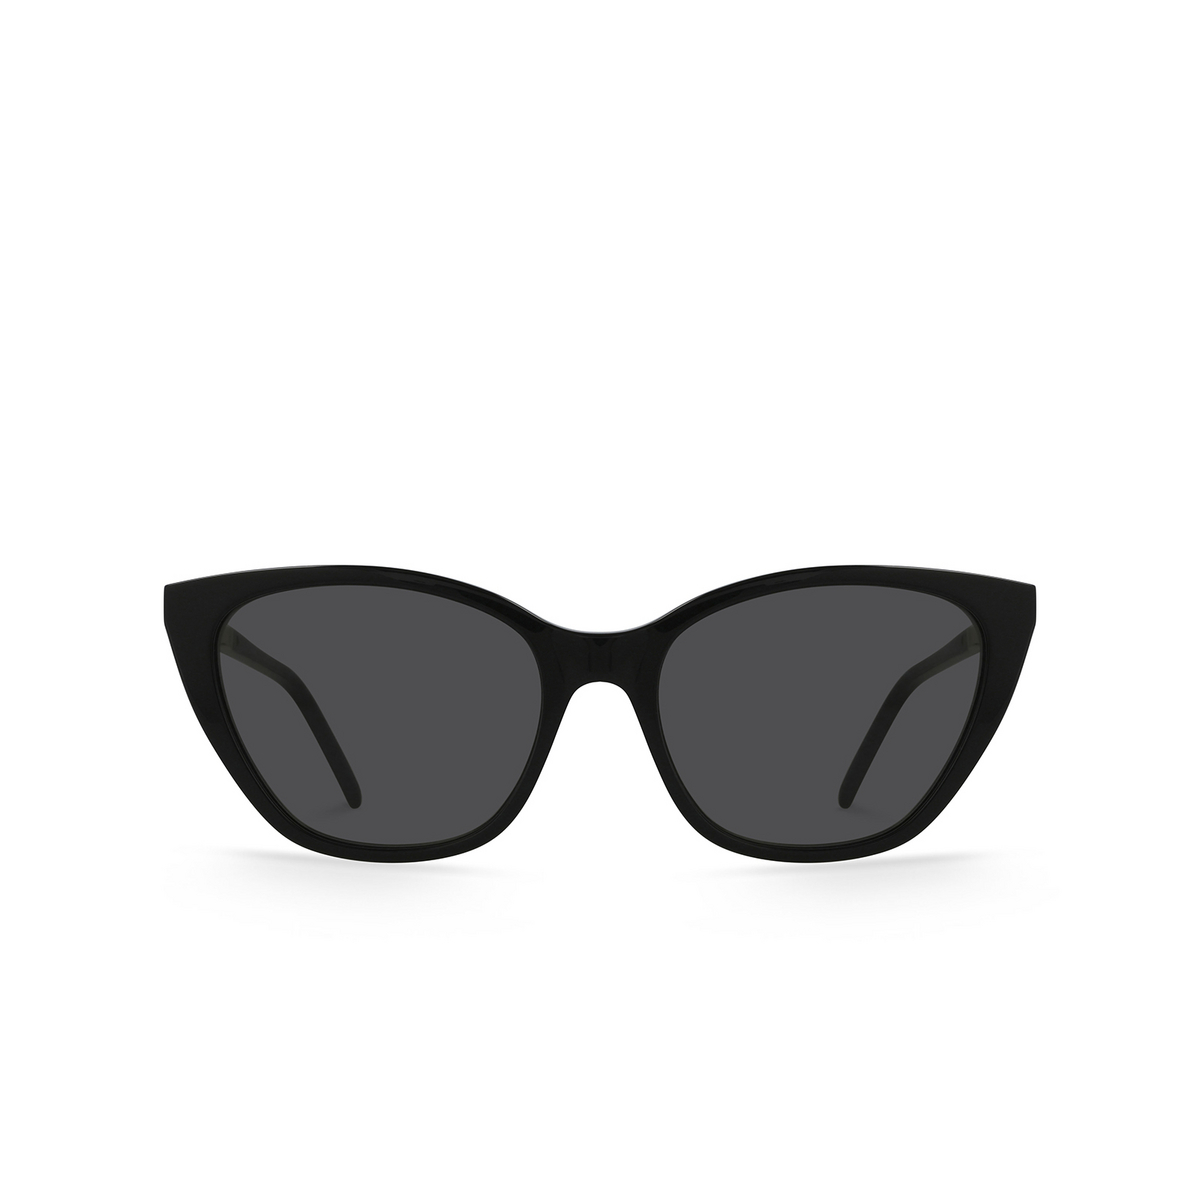 Saint Laurent SL M69 Sunglasses 004 Black - front view